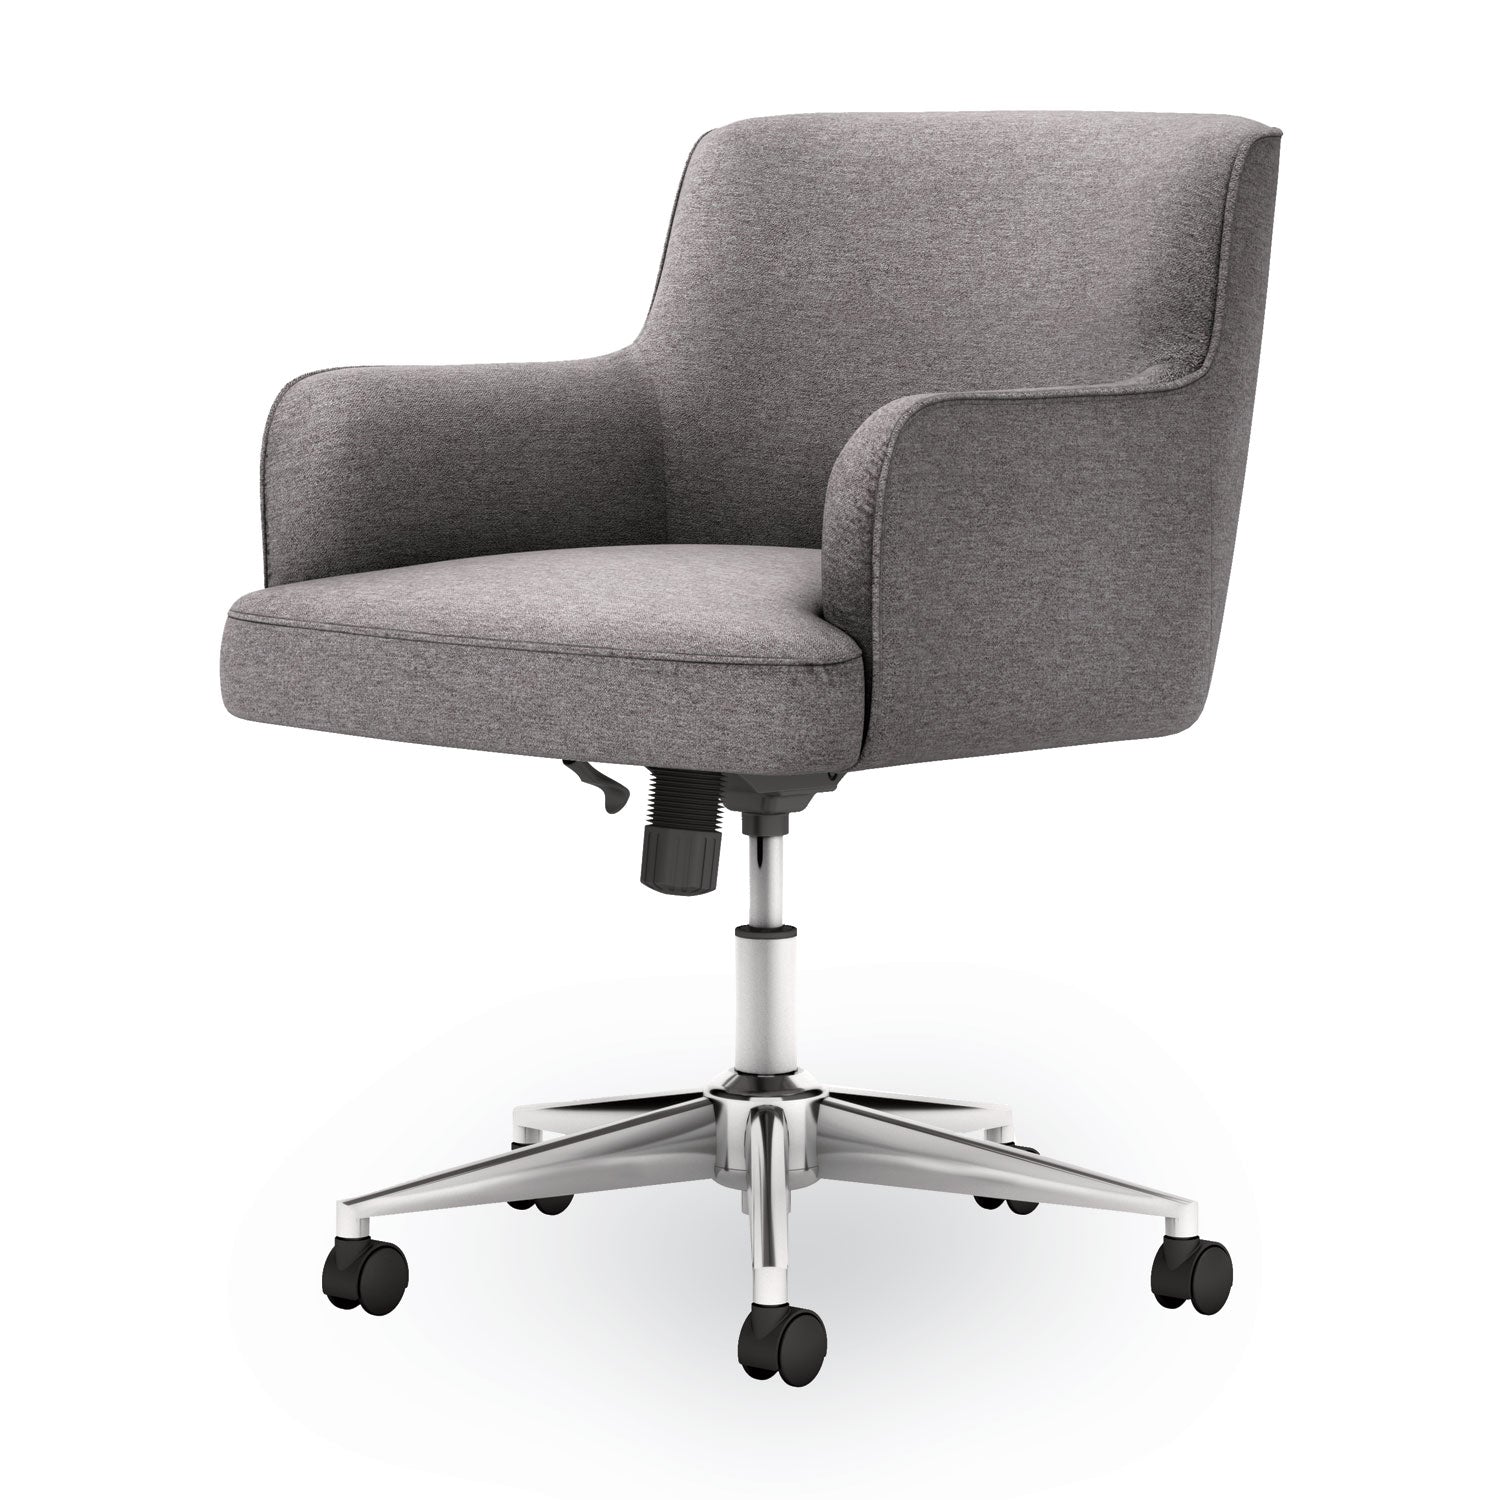 matter-multipurpose-chair-23-x-248-x-34-light-gray-seat-light-gray-back-chrome-base-ships-in-7-10-business-days_honvl232gry01 - 2